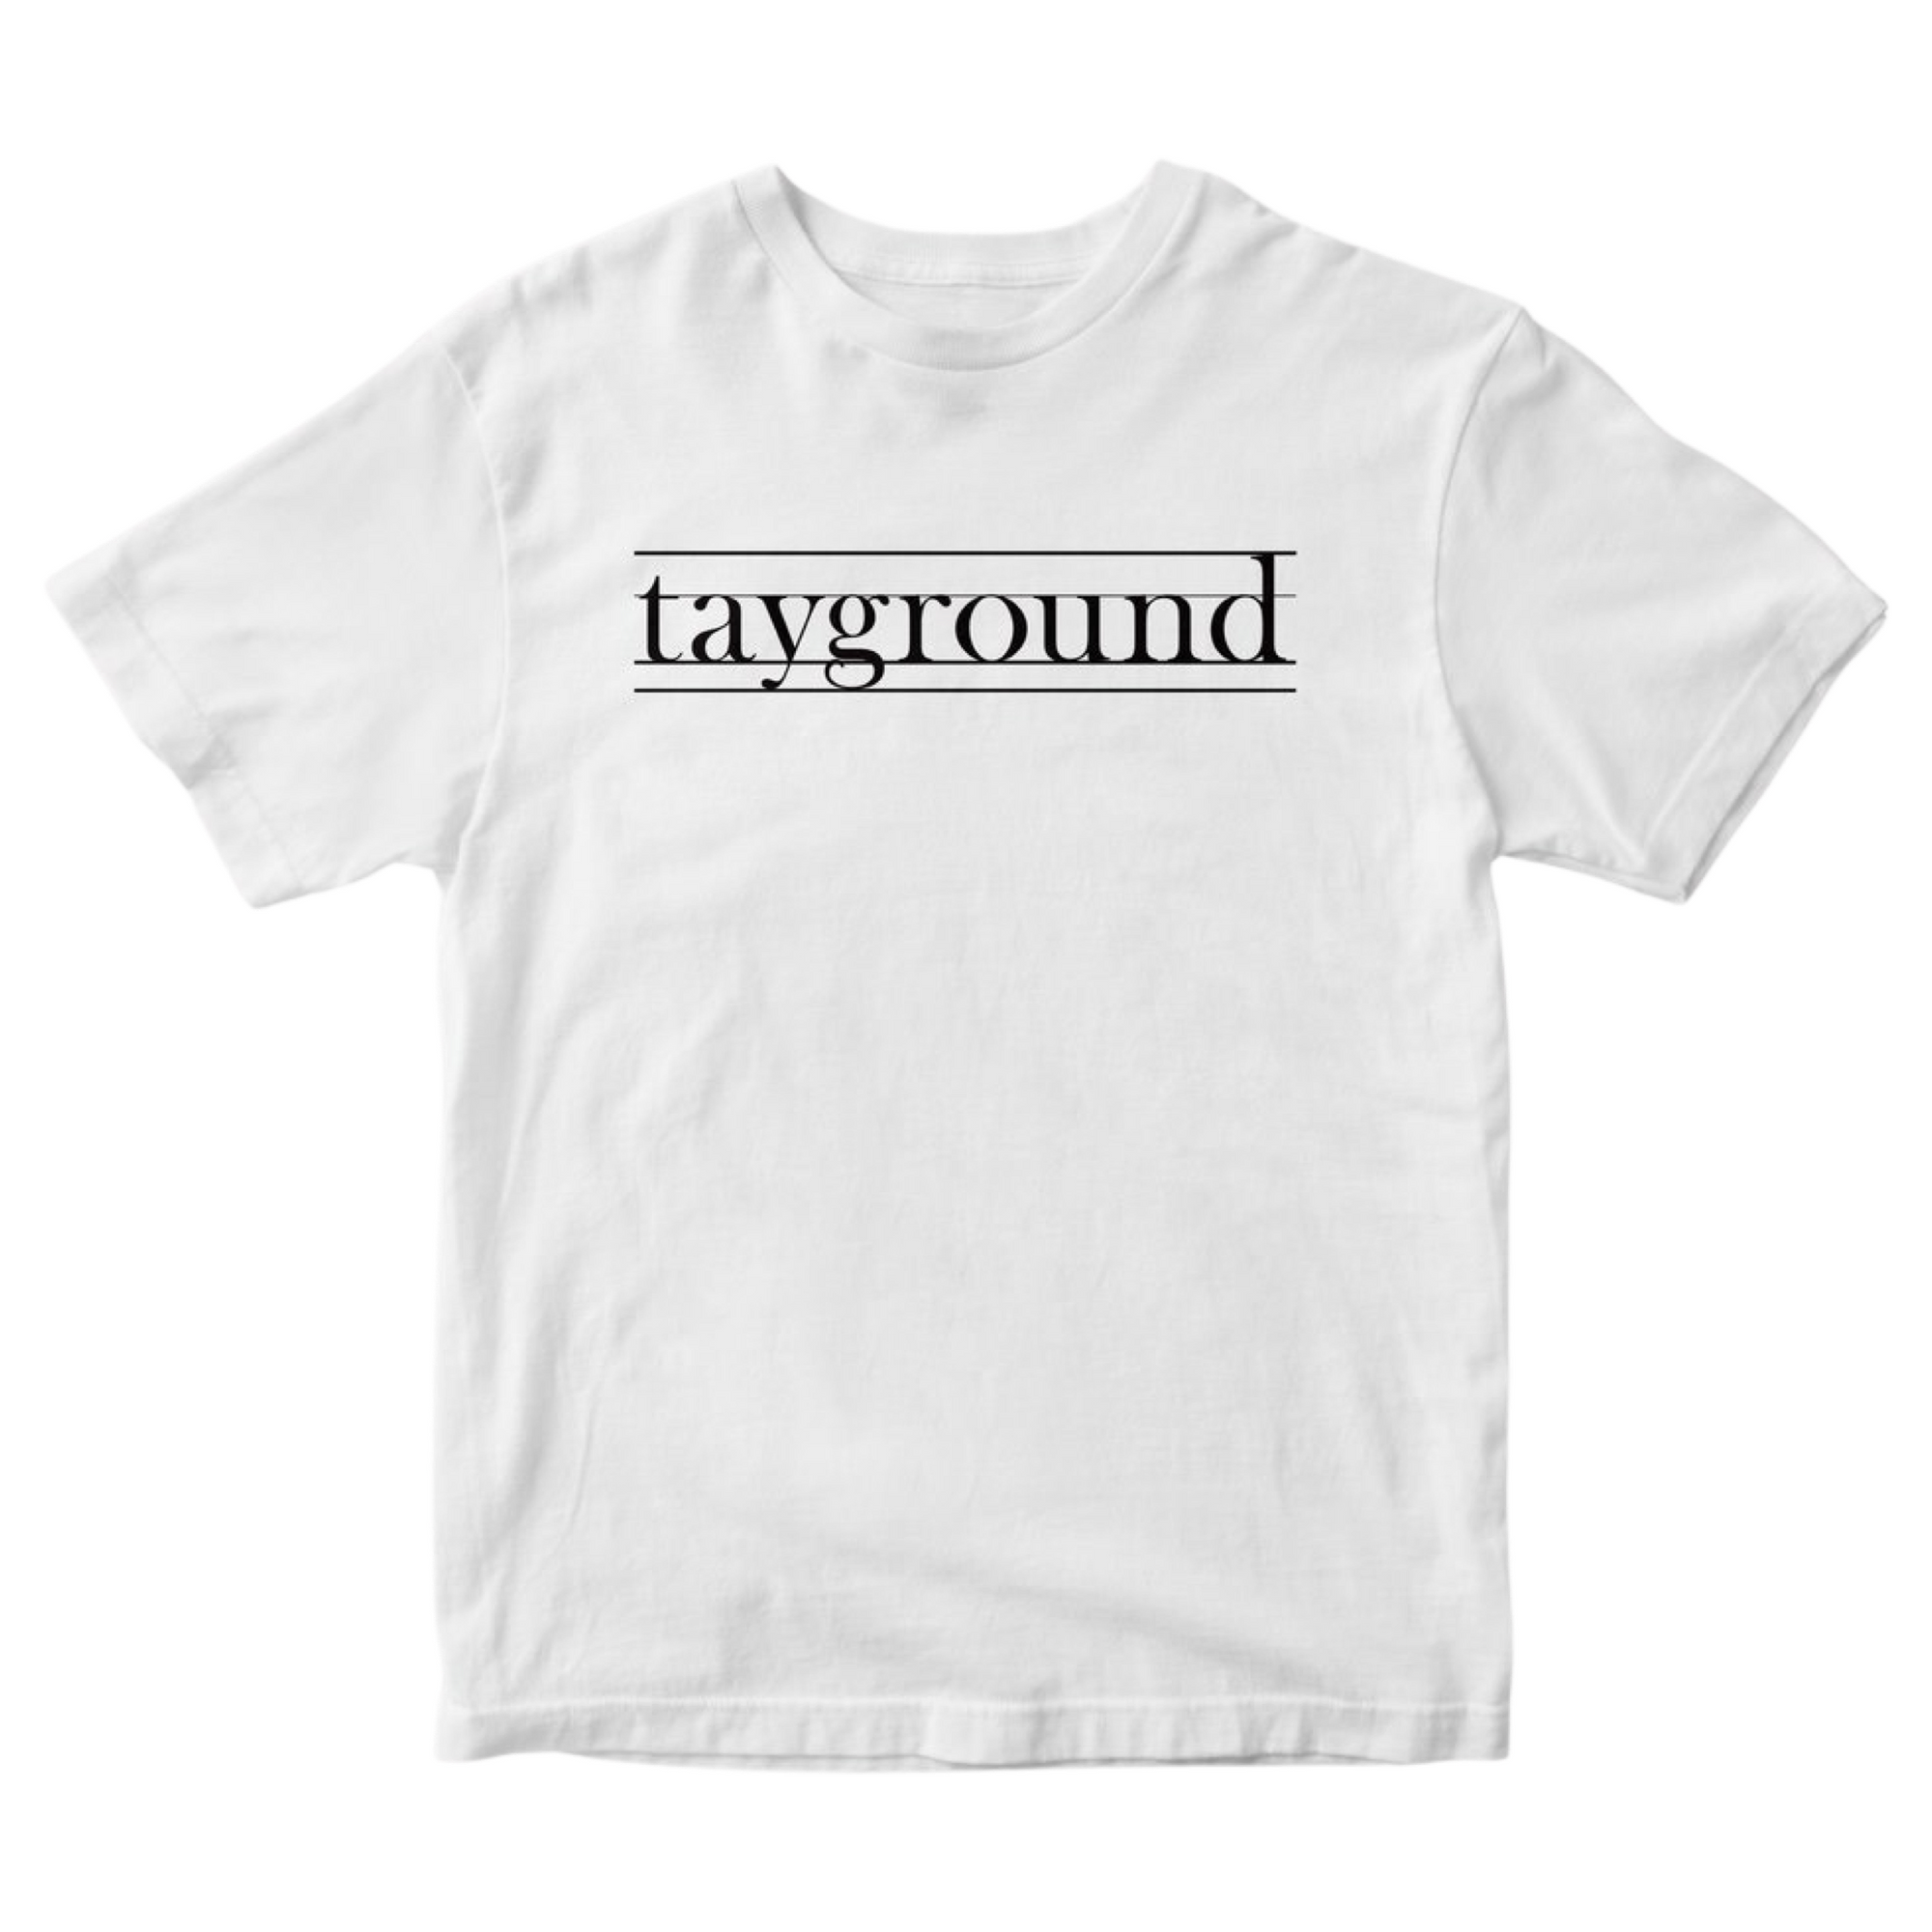 tayground Shirt Black Text